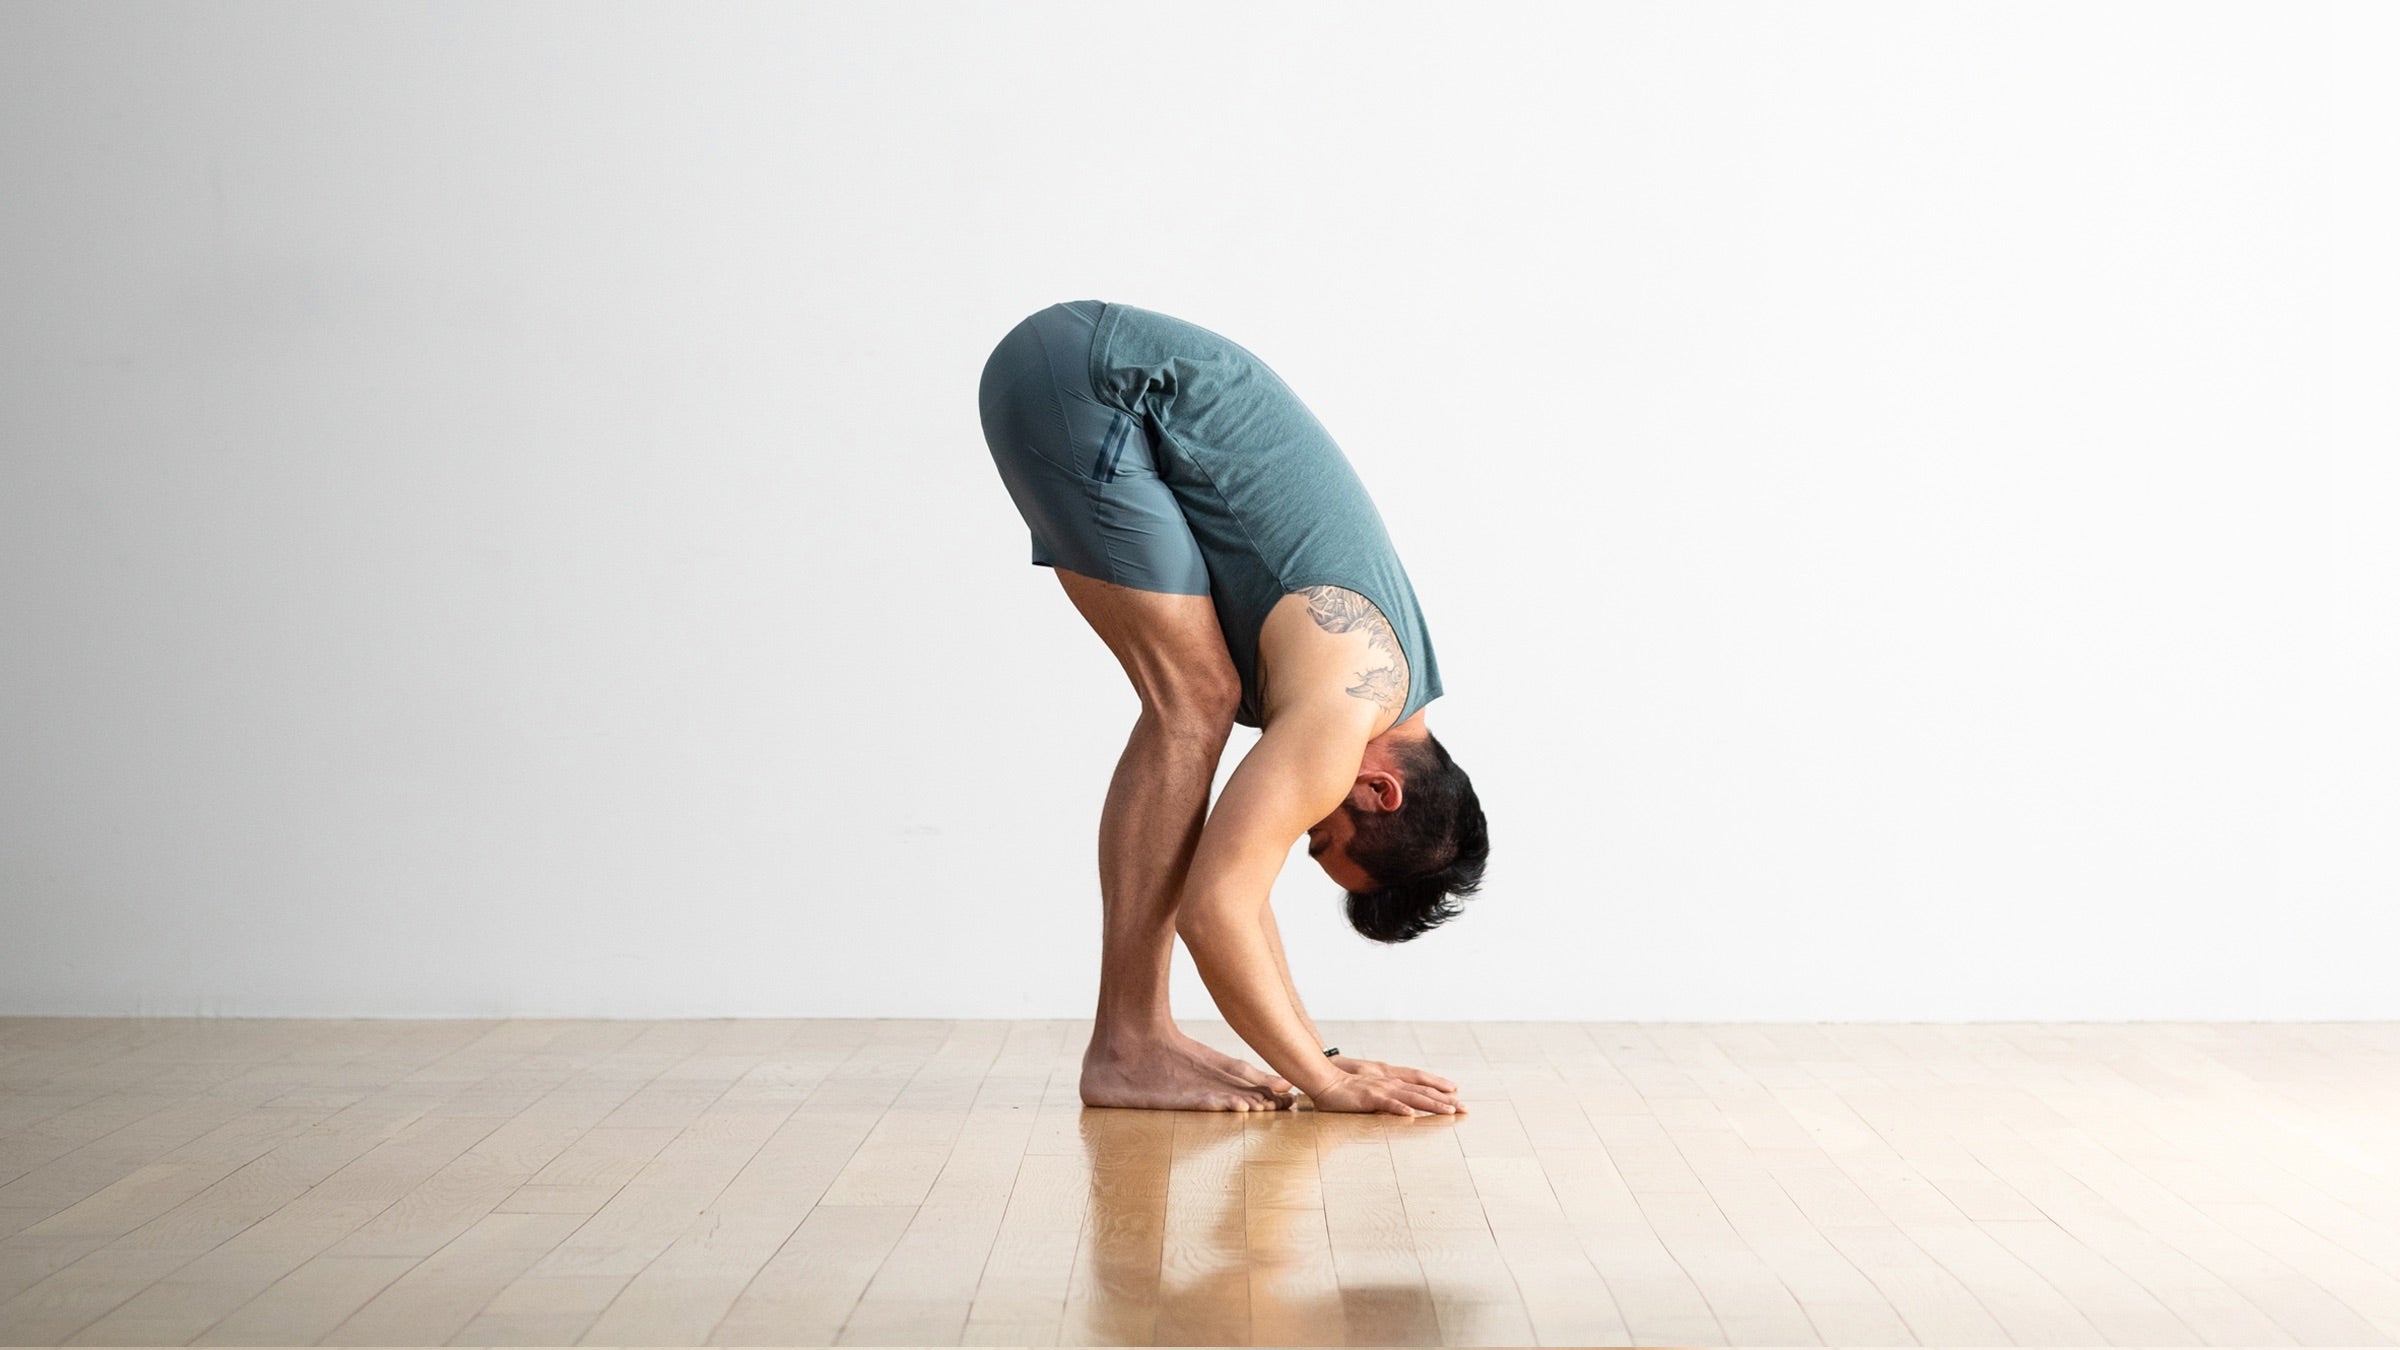 Gorilla Yoga Pose | #Shorts | #YogaShorts | Padahastasana | Yoga Pose | Yoga  | Free Yoga Club - YouTube